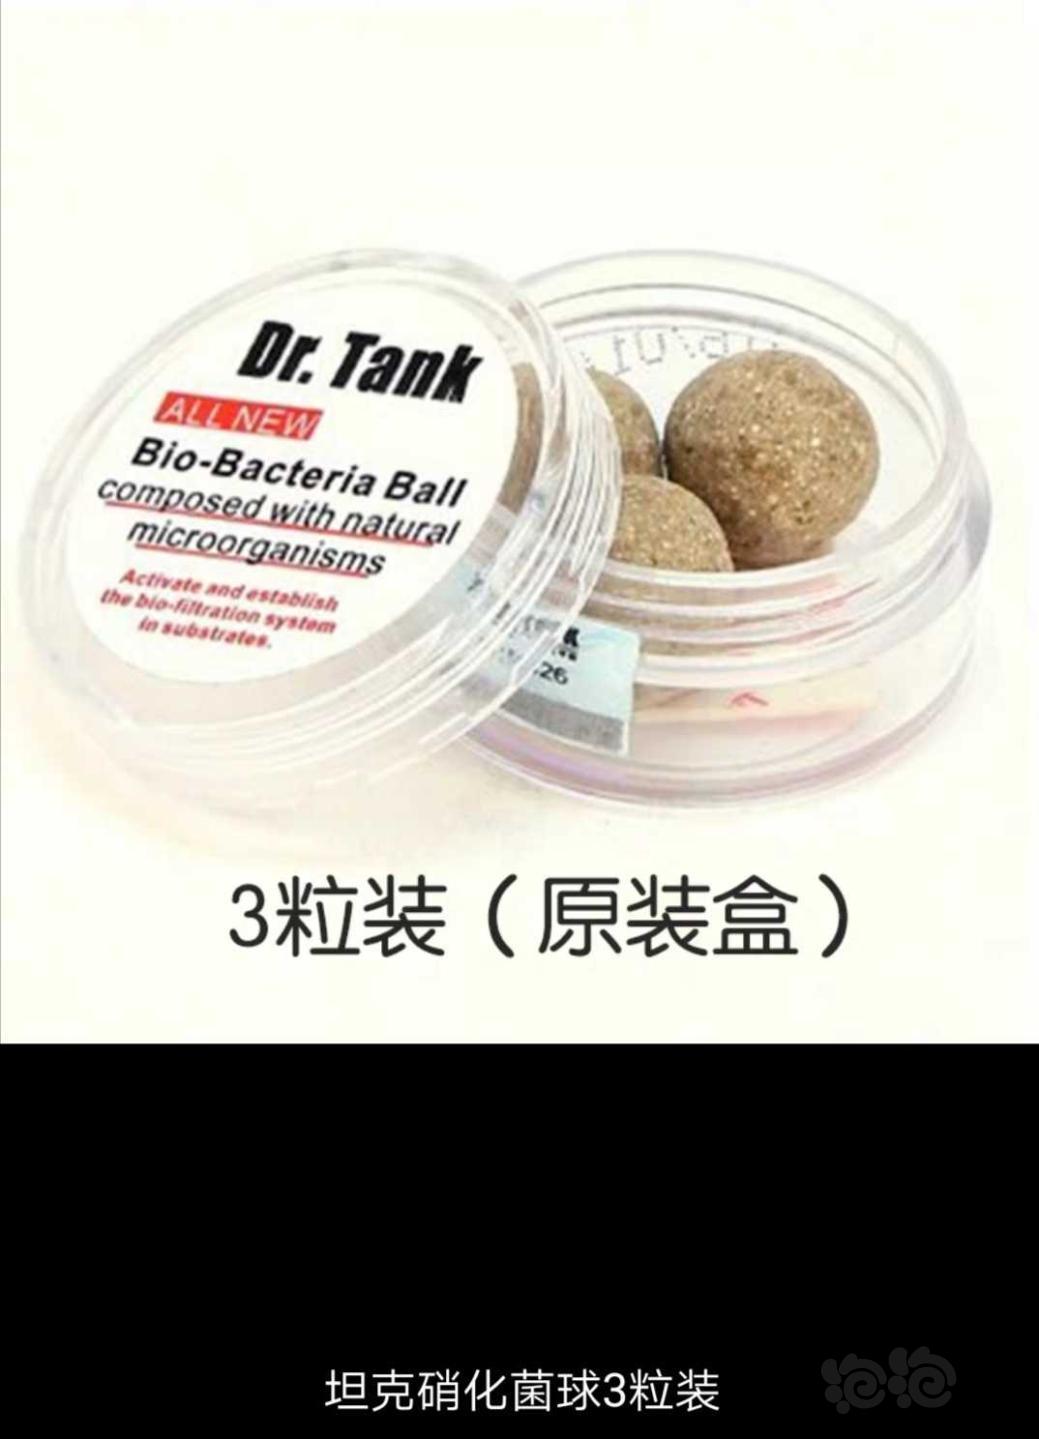 【用品】2019-10-30#RMB拍卖坦克二代硝化细菌球三粒装*3盒-图1